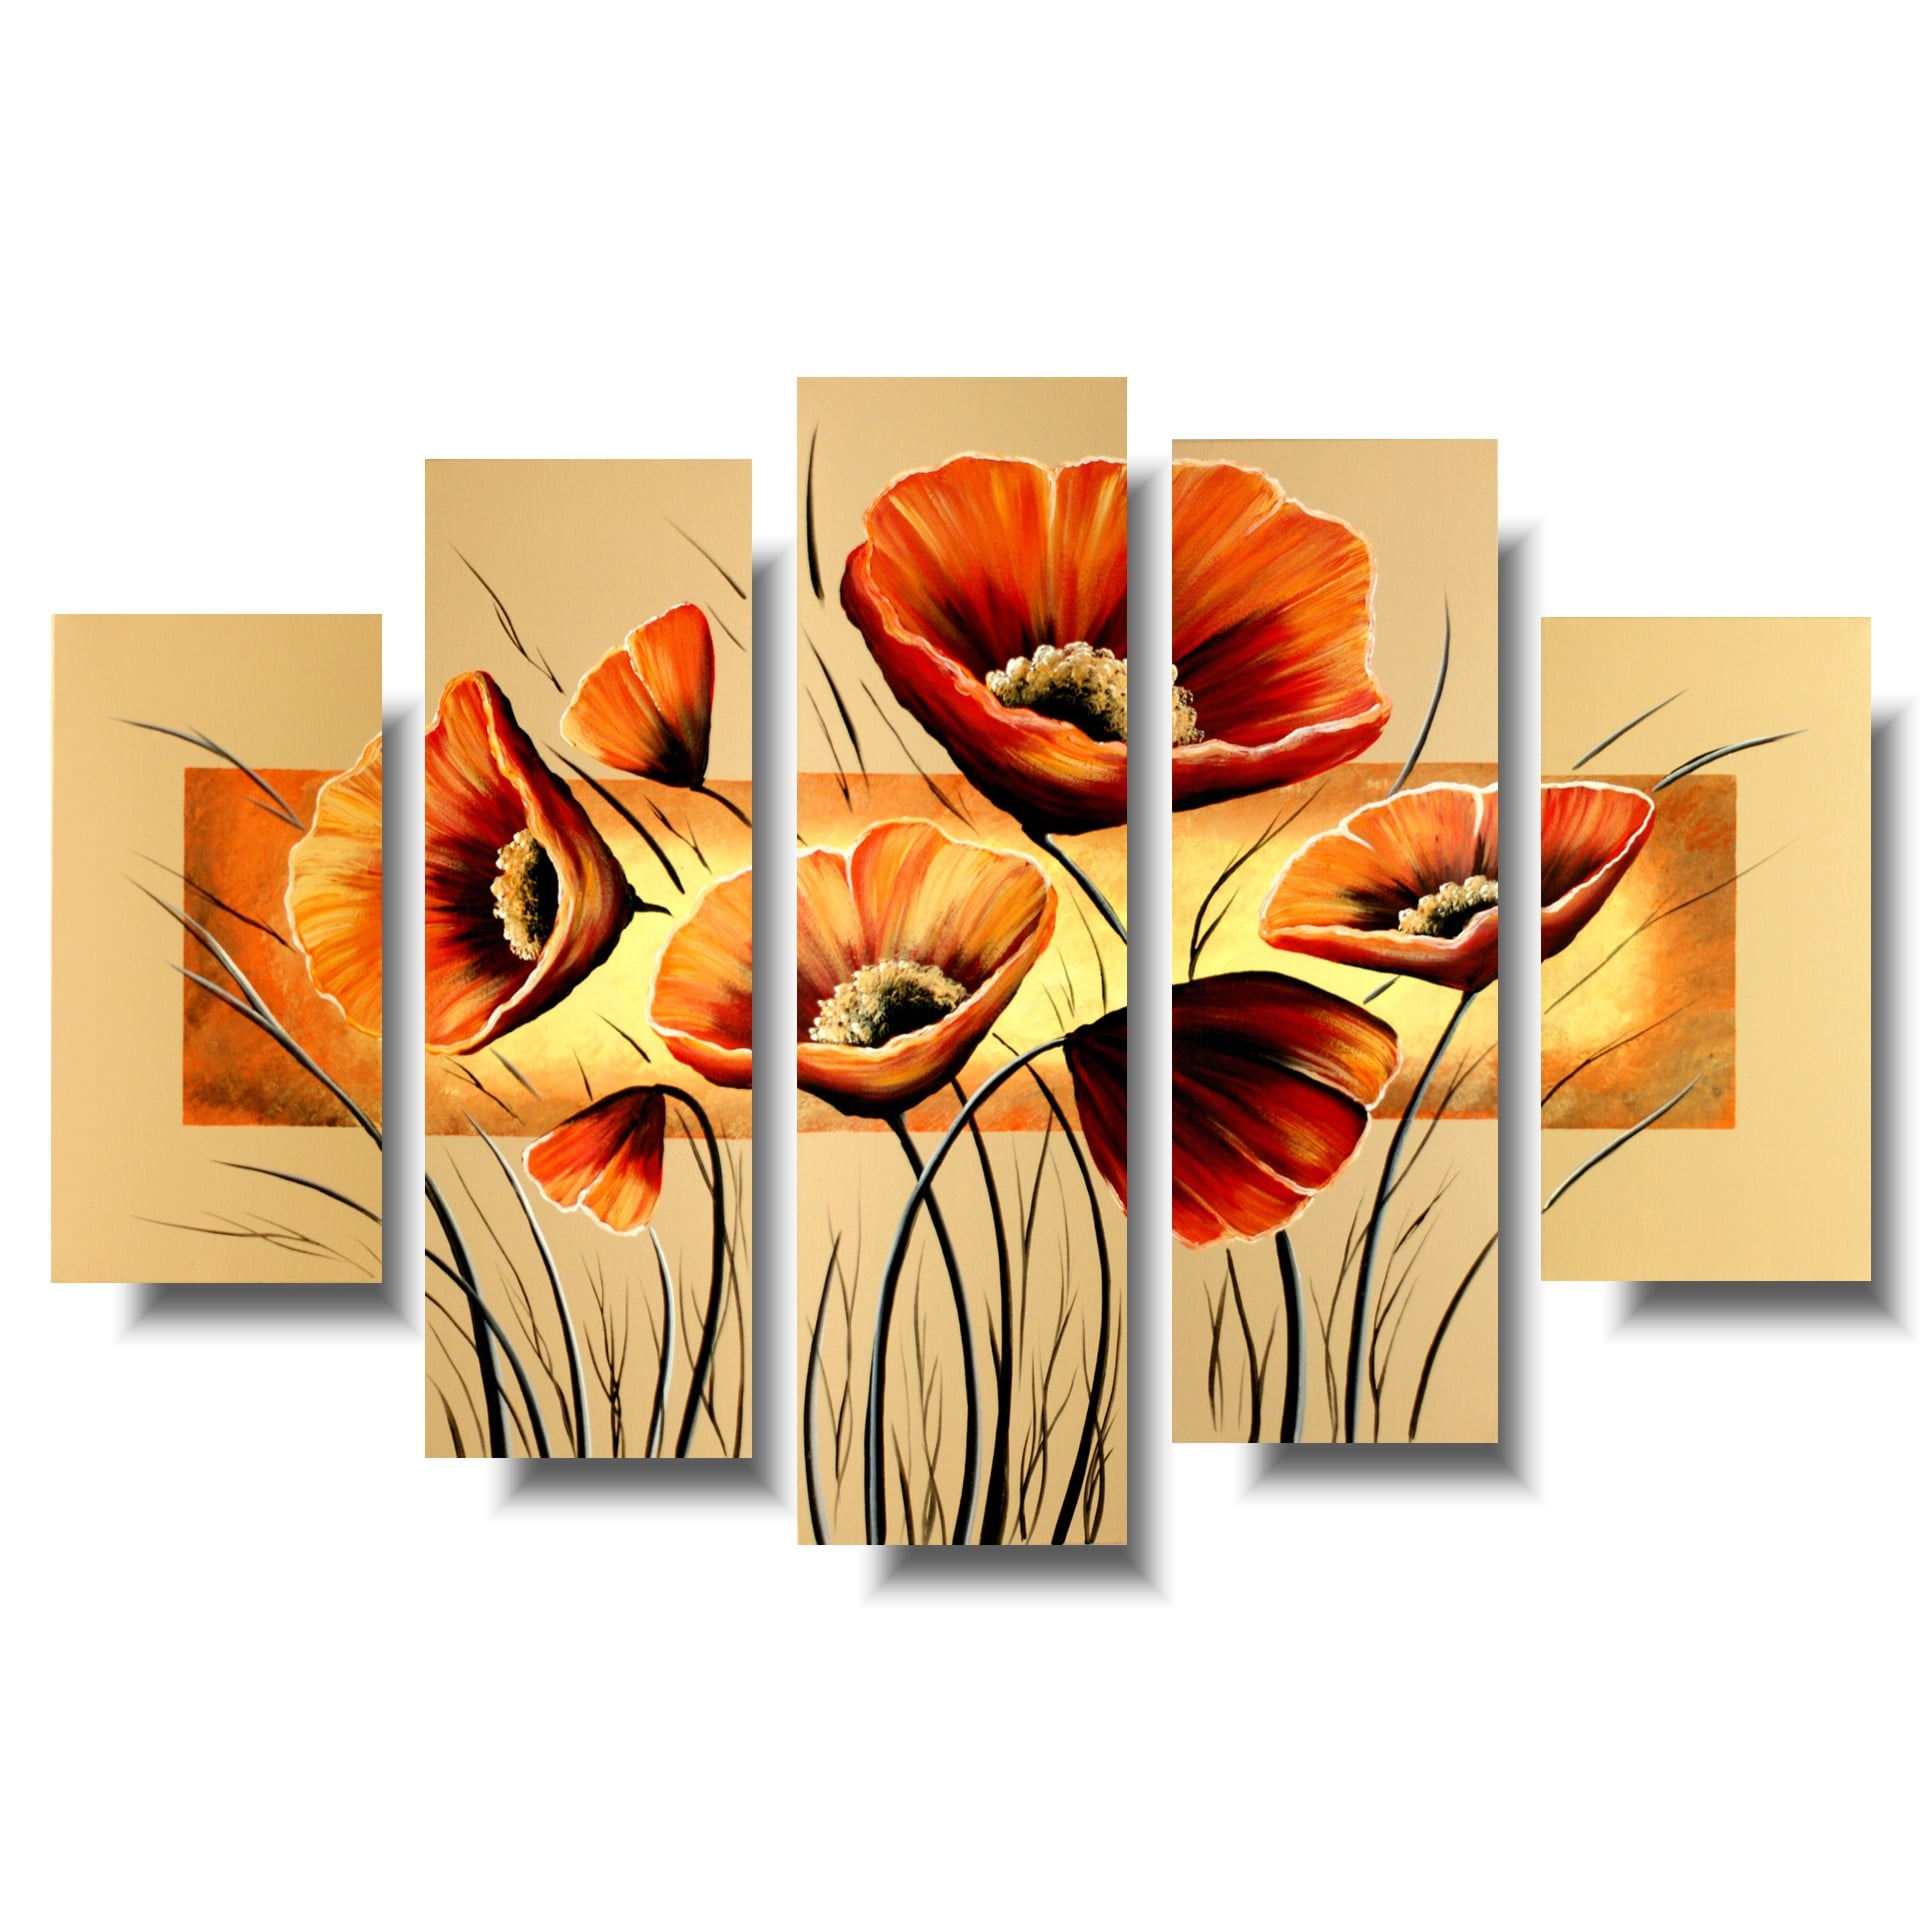 Obraz kwiaty pomarańczowe maki , Obraz tryptyk obraz kwiaty pomarańczowe maki obrazy malowane do mieszkania 1109A